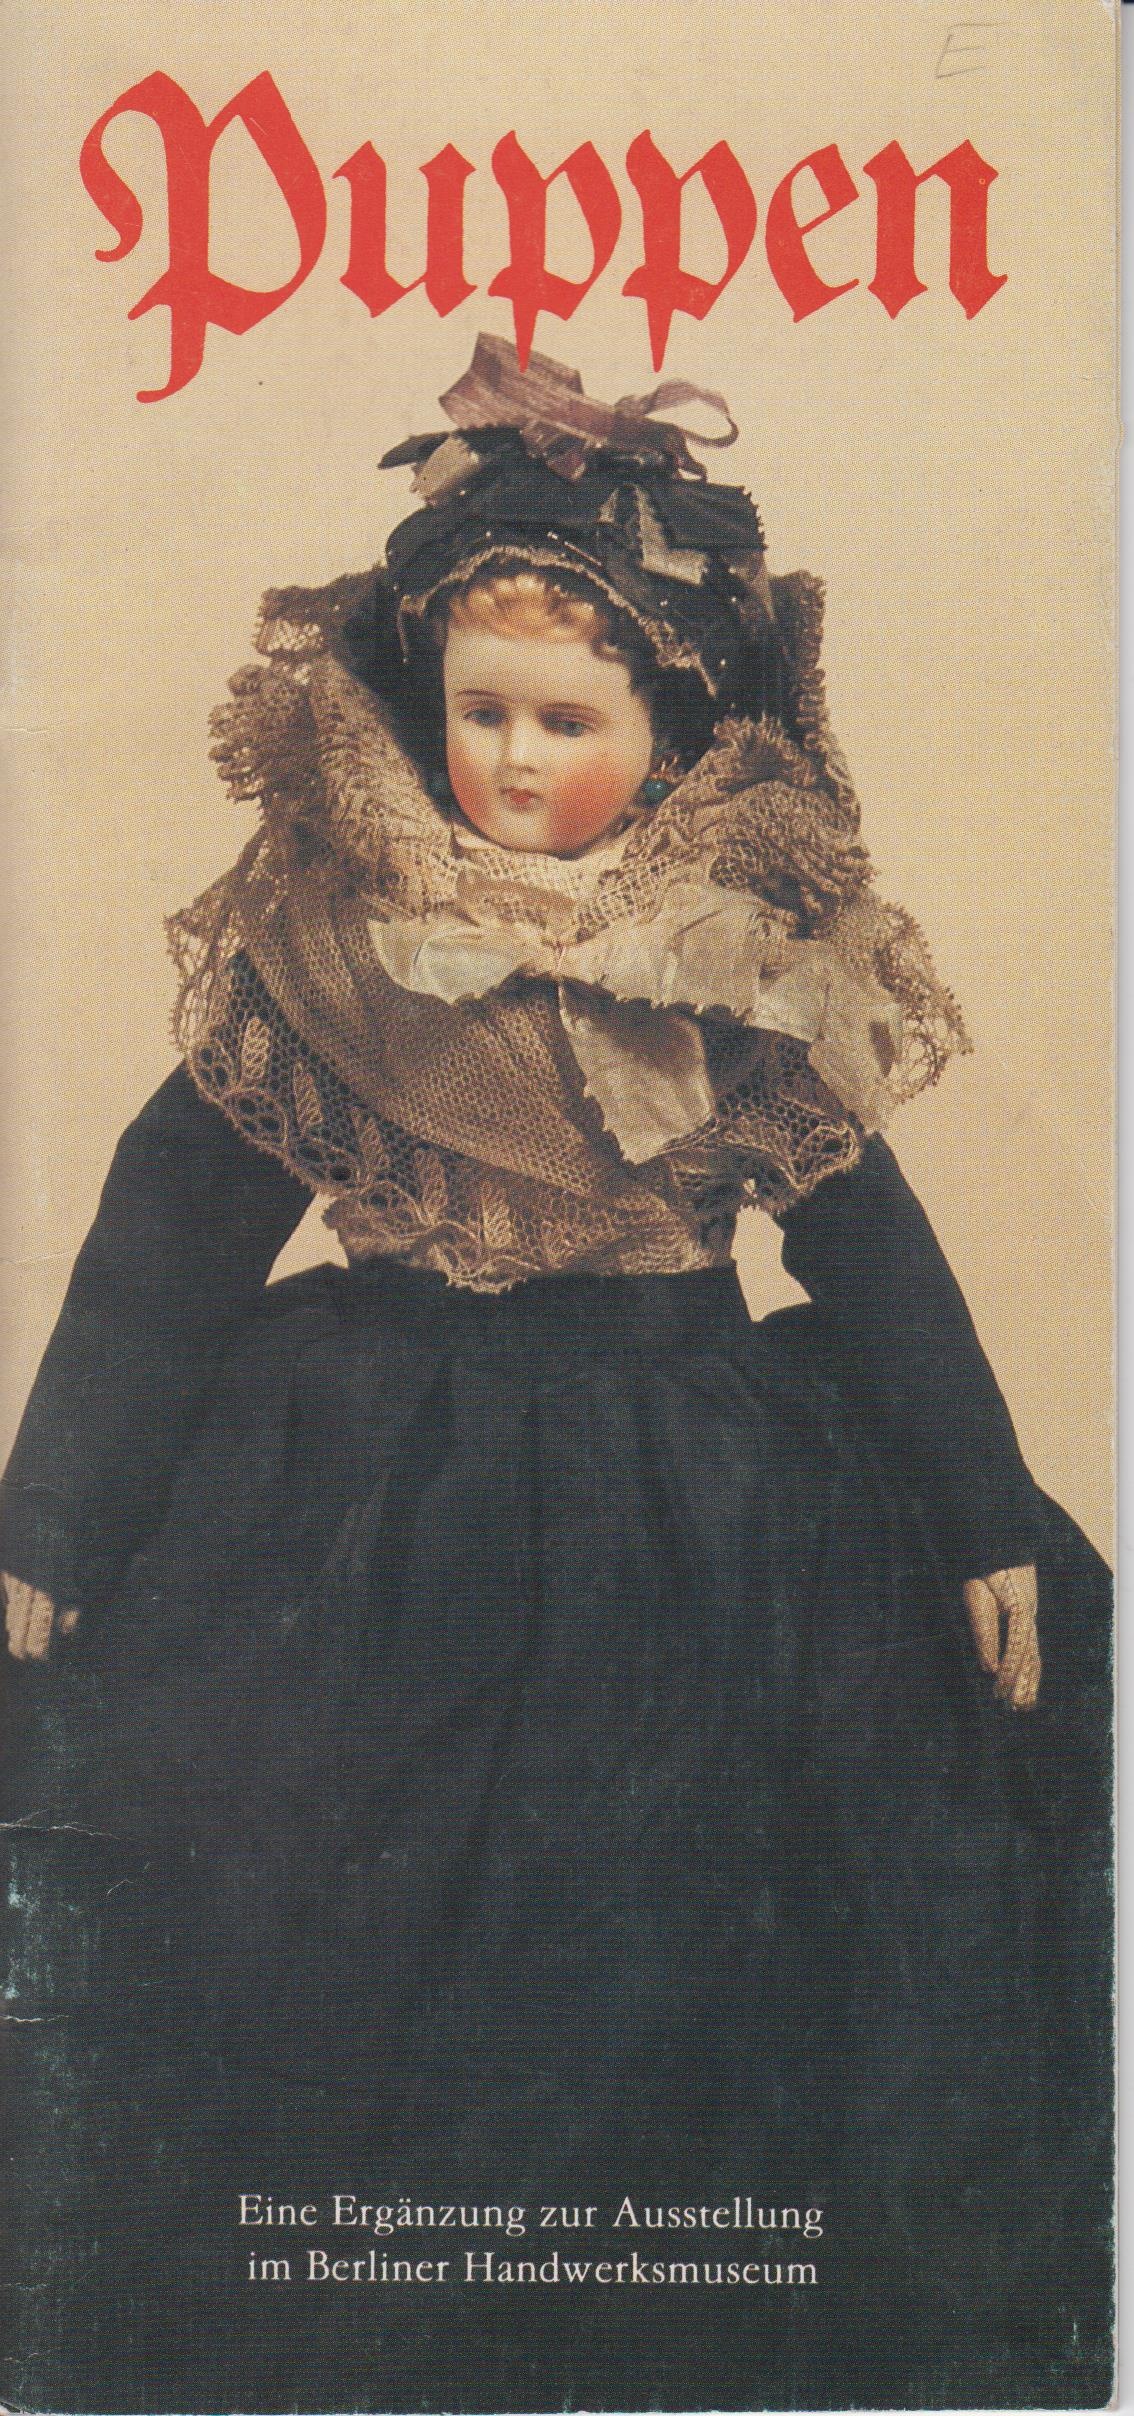 Puppen (Városi Képtár - Hetedhét Játékmúzeum, Székesfehérvár CC BY-NC-SA)